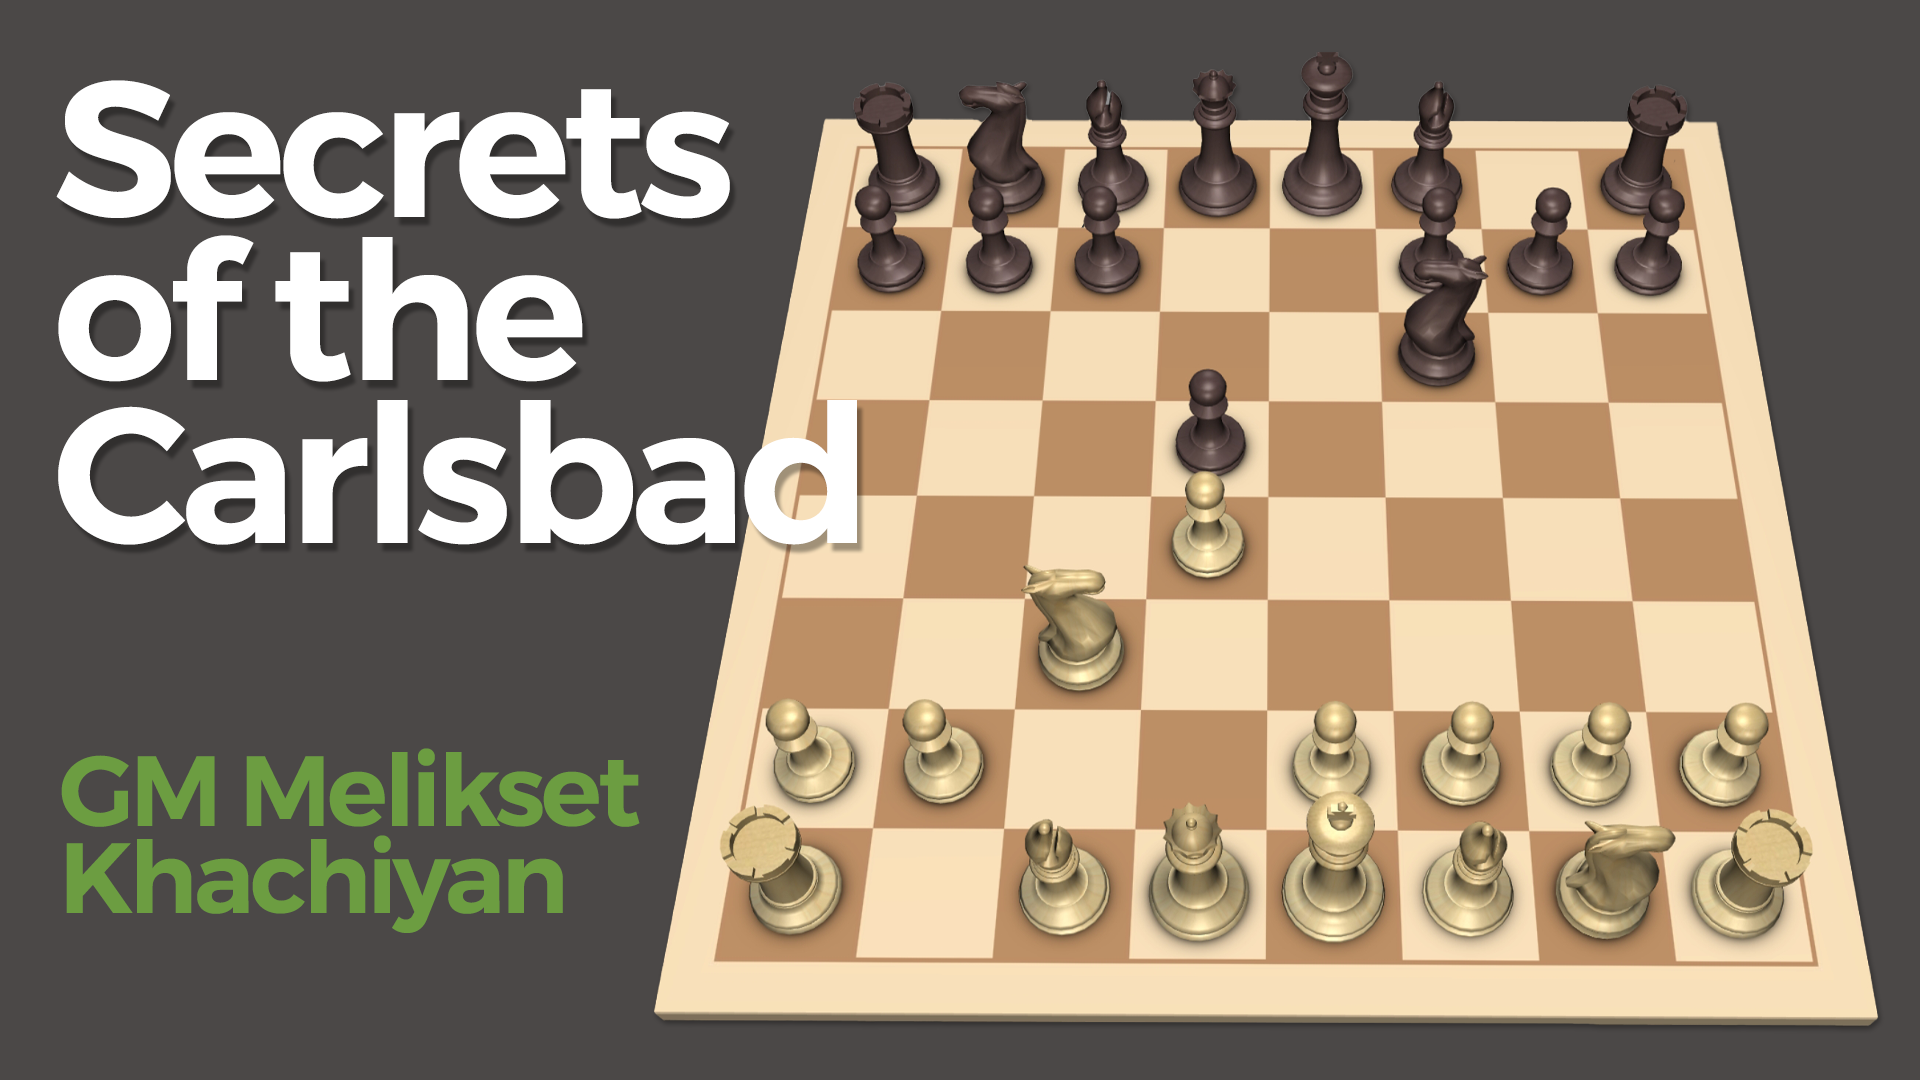 Basic Checkmates and More - Lições de Xadrez 